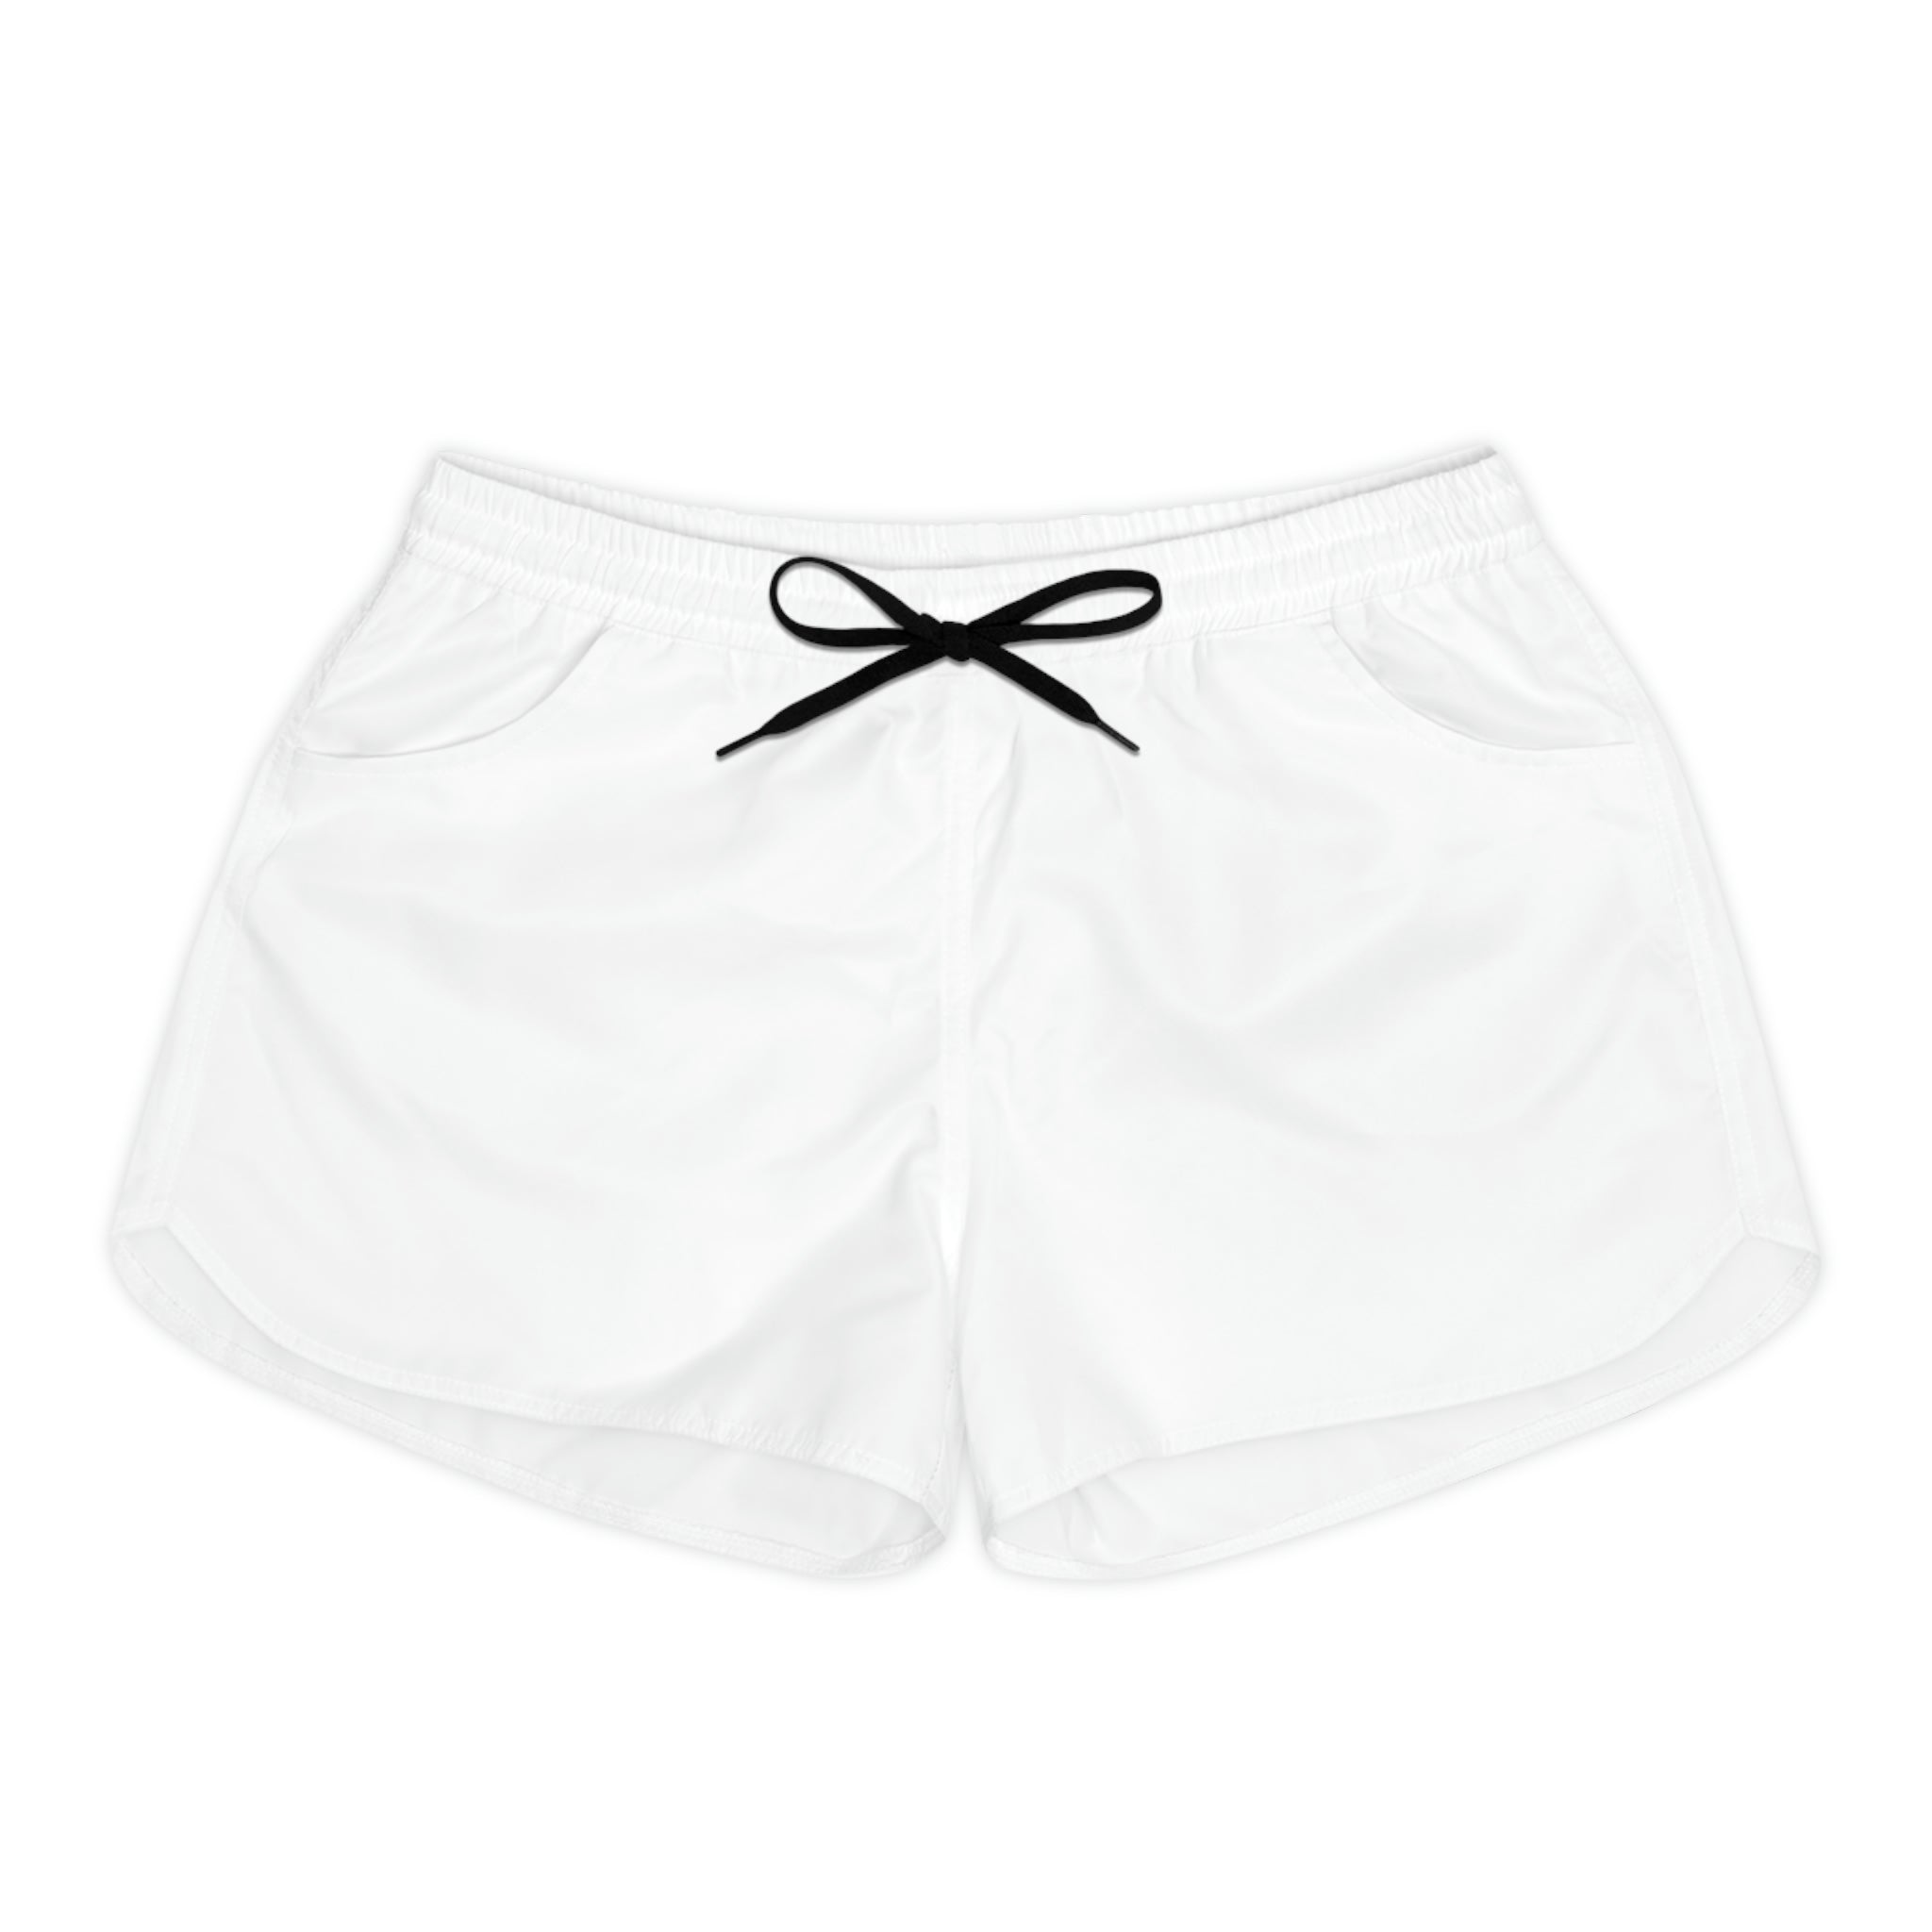 Women's Casual Shorts - White - Sunset Harbor Clothing